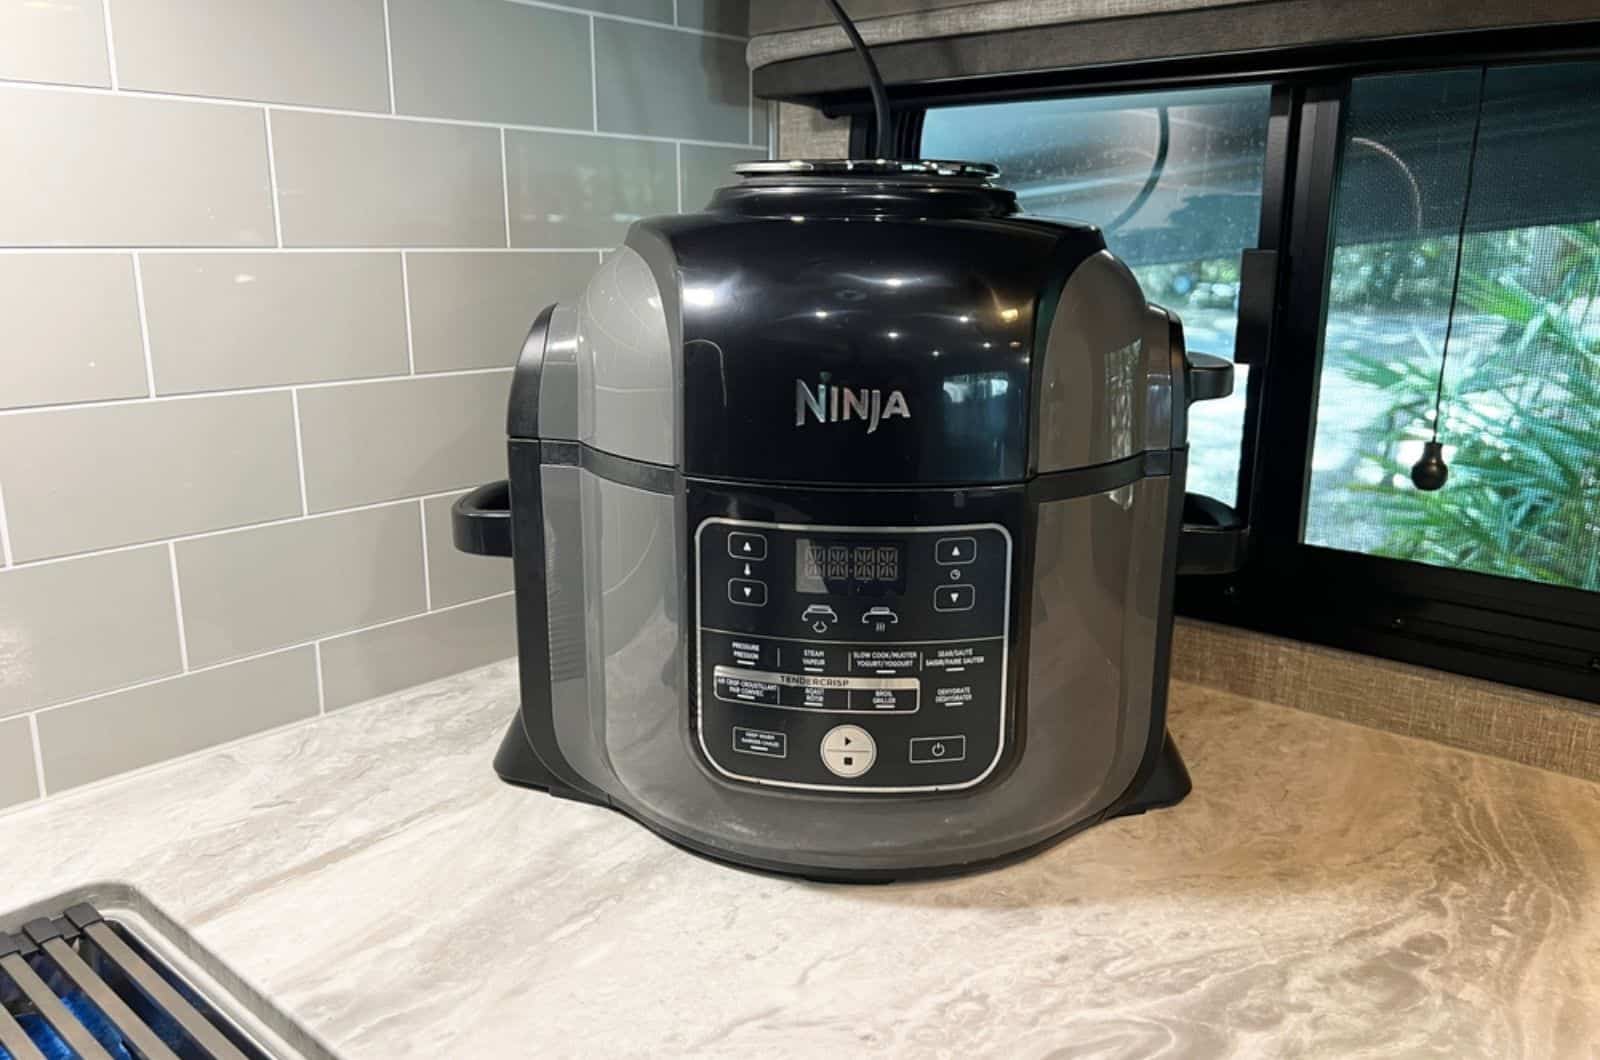 Ninja Foodi pressure cooker and air fryer